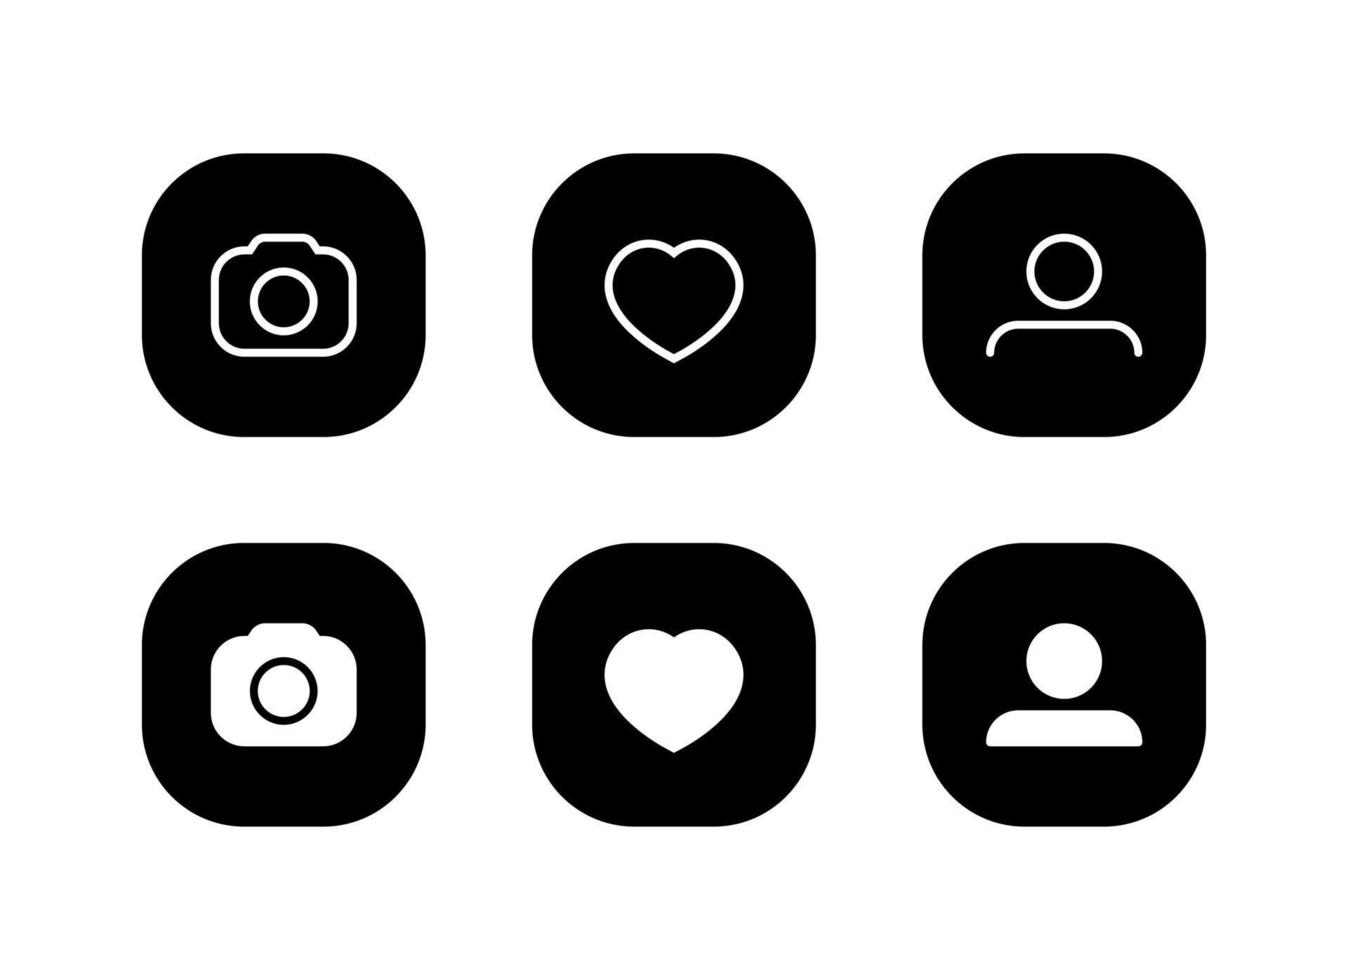 elemento de redes sociales. vector de icono de cámara, amor y perfil en botón cuadrado